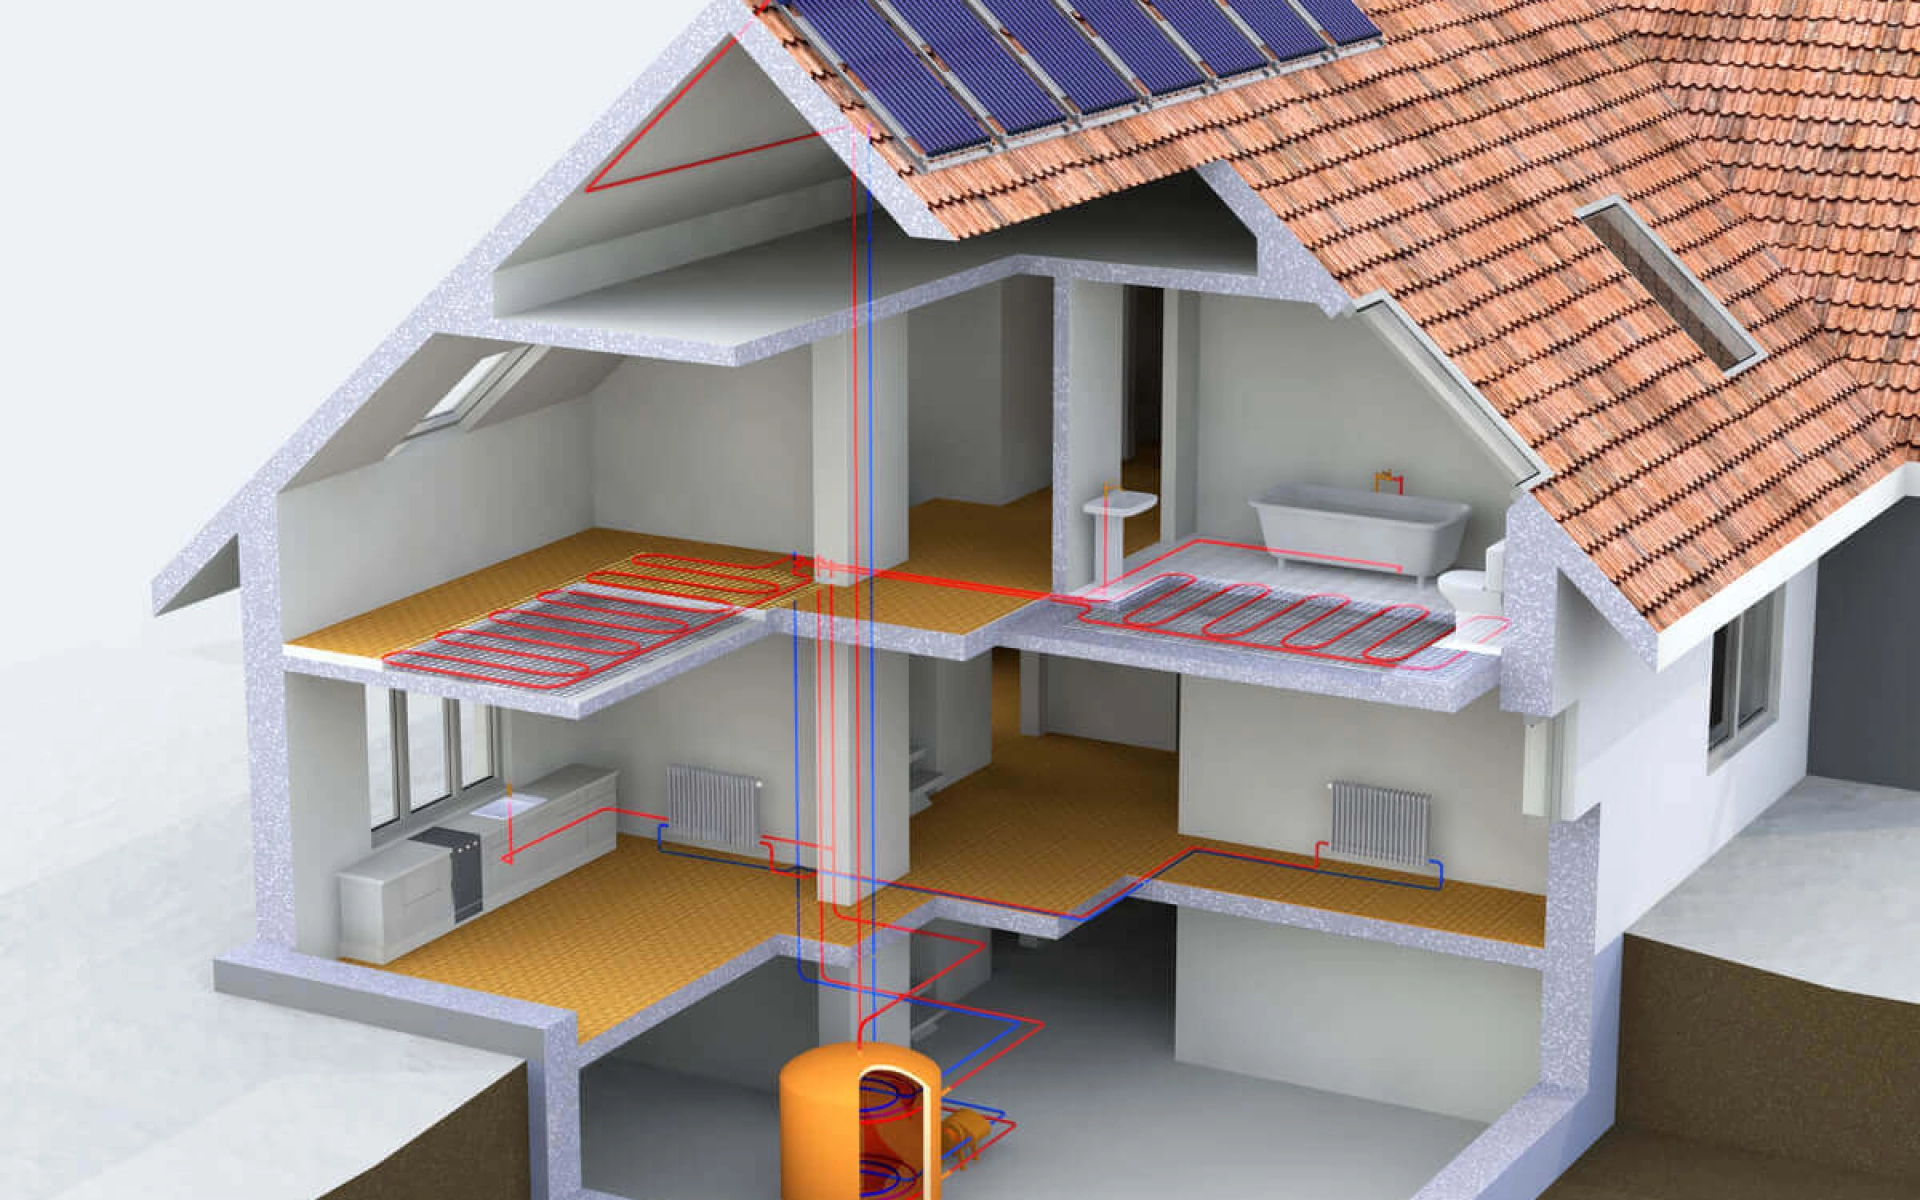 Die Grafik zeigt den Aufbau einer Solarthermie-Anlage in einem Haus-Querschnitt.